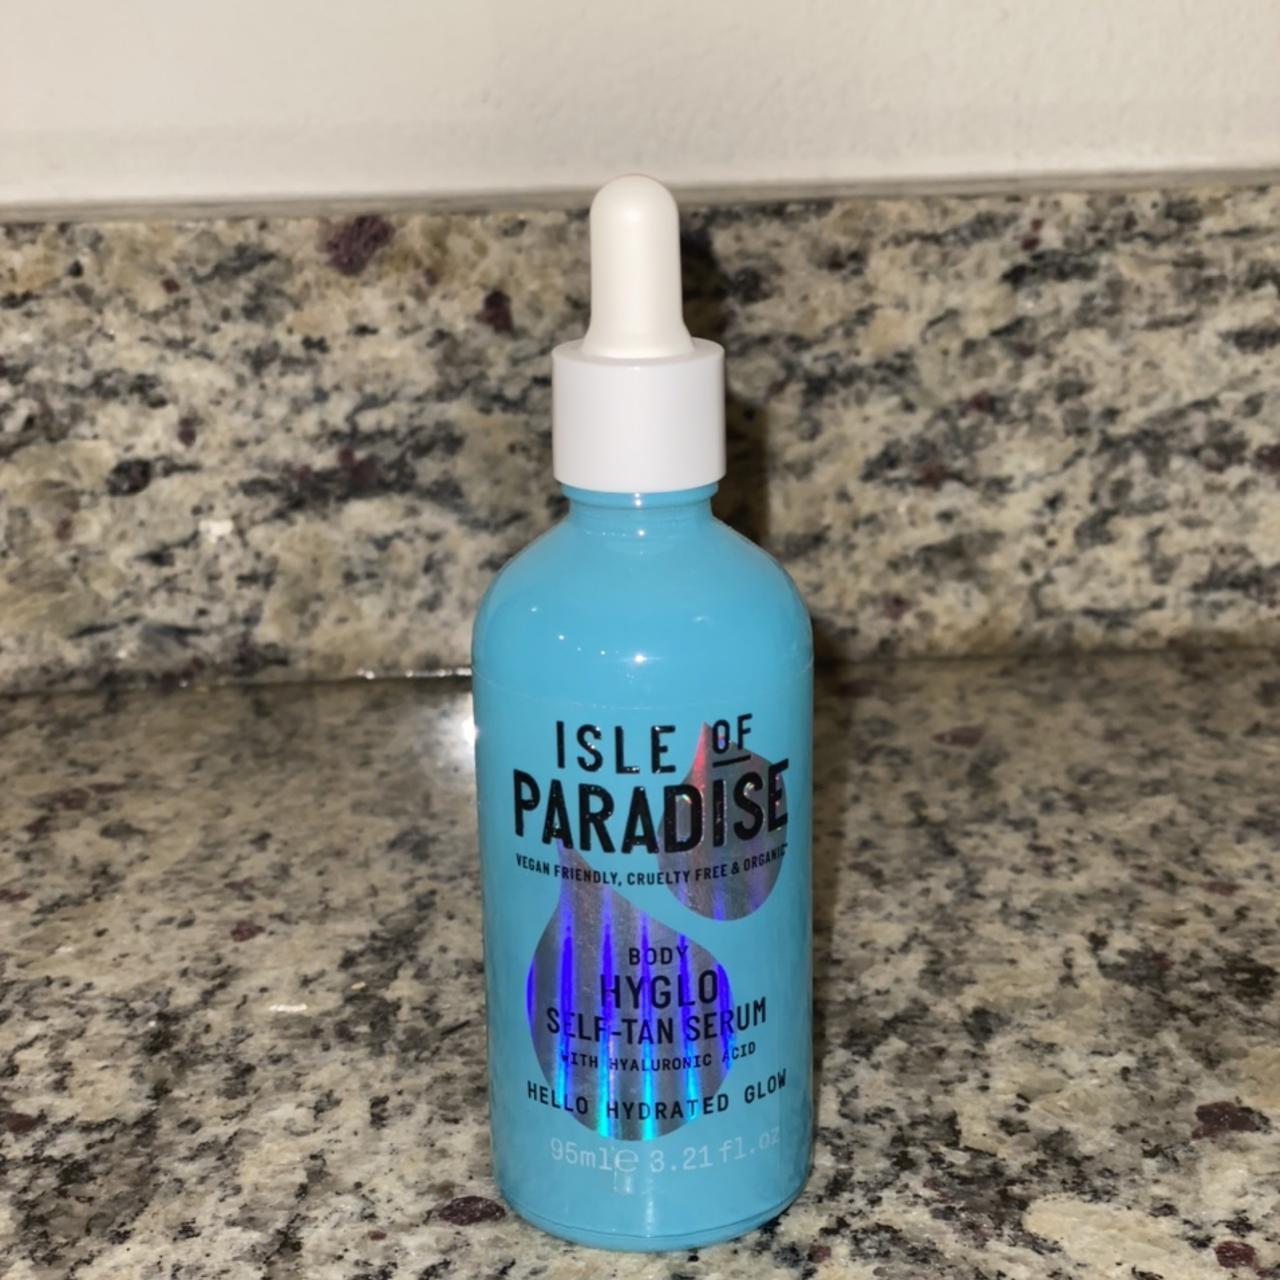 Product Image 1 - Isle of Paradise Body Hyglo